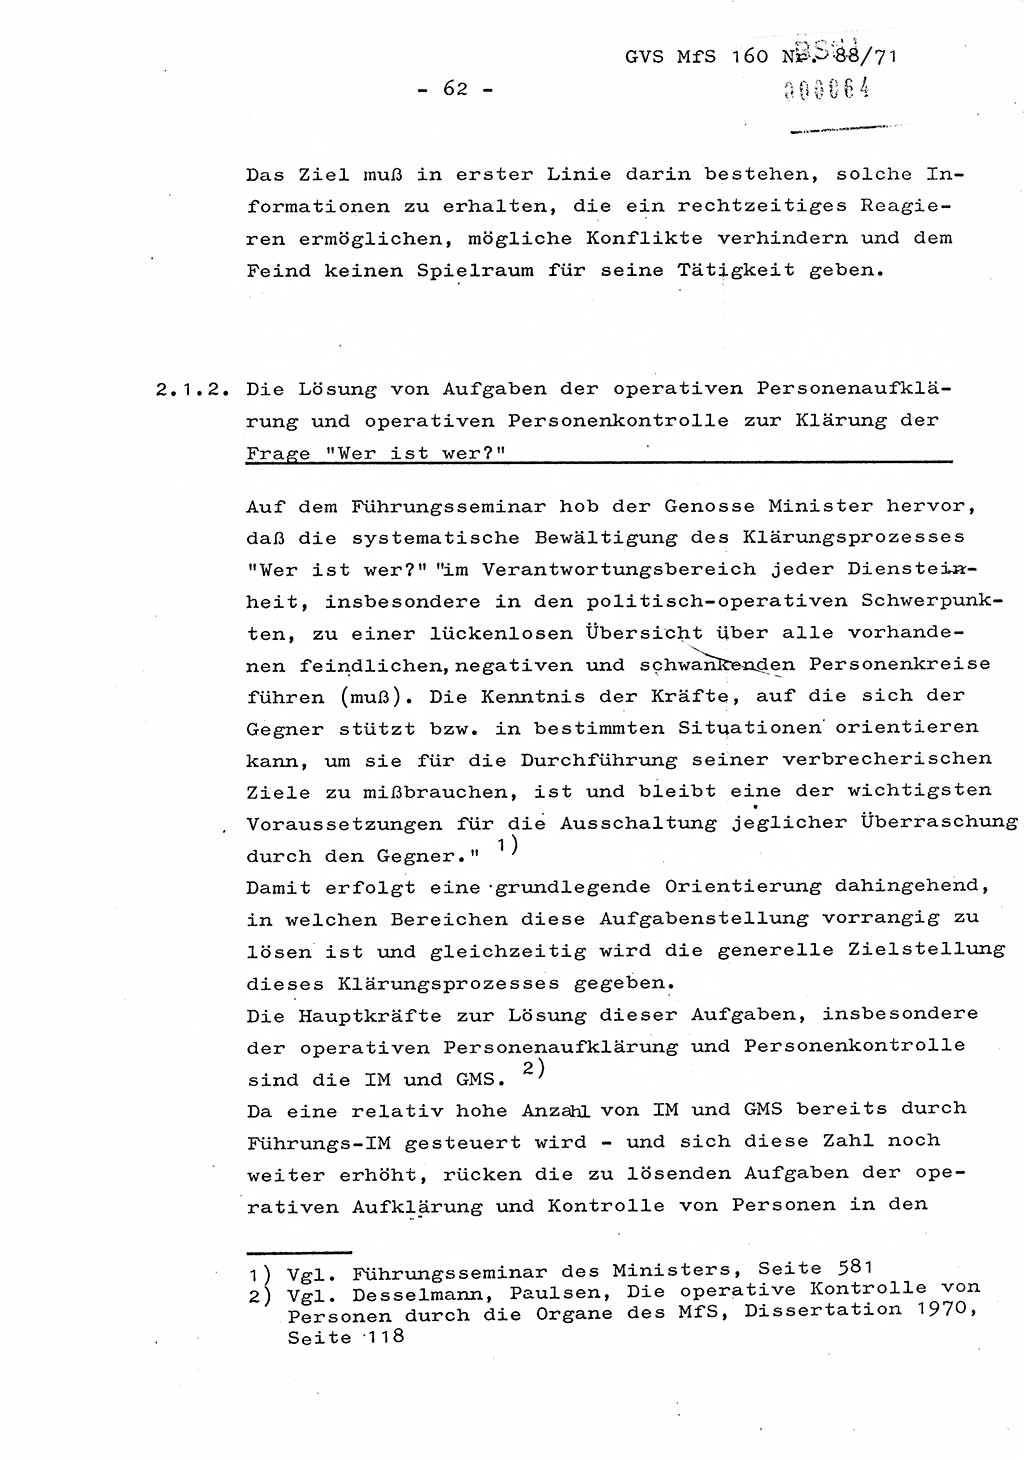 Dissertation Oberstleutnant Josef Schwarz (BV Schwerin), Major Fritz Amm (JHS), Hauptmann Peter Gräßler (JHS), Ministerium für Staatssicherheit (MfS) [Deutsche Demokratische Republik (DDR)], Juristische Hochschule (JHS), Geheime Verschlußsache (GVS) 160-88/71, Potsdam 1972, Seite 62 (Diss. MfS DDR JHS GVS 160-88/71 1972, S. 62)